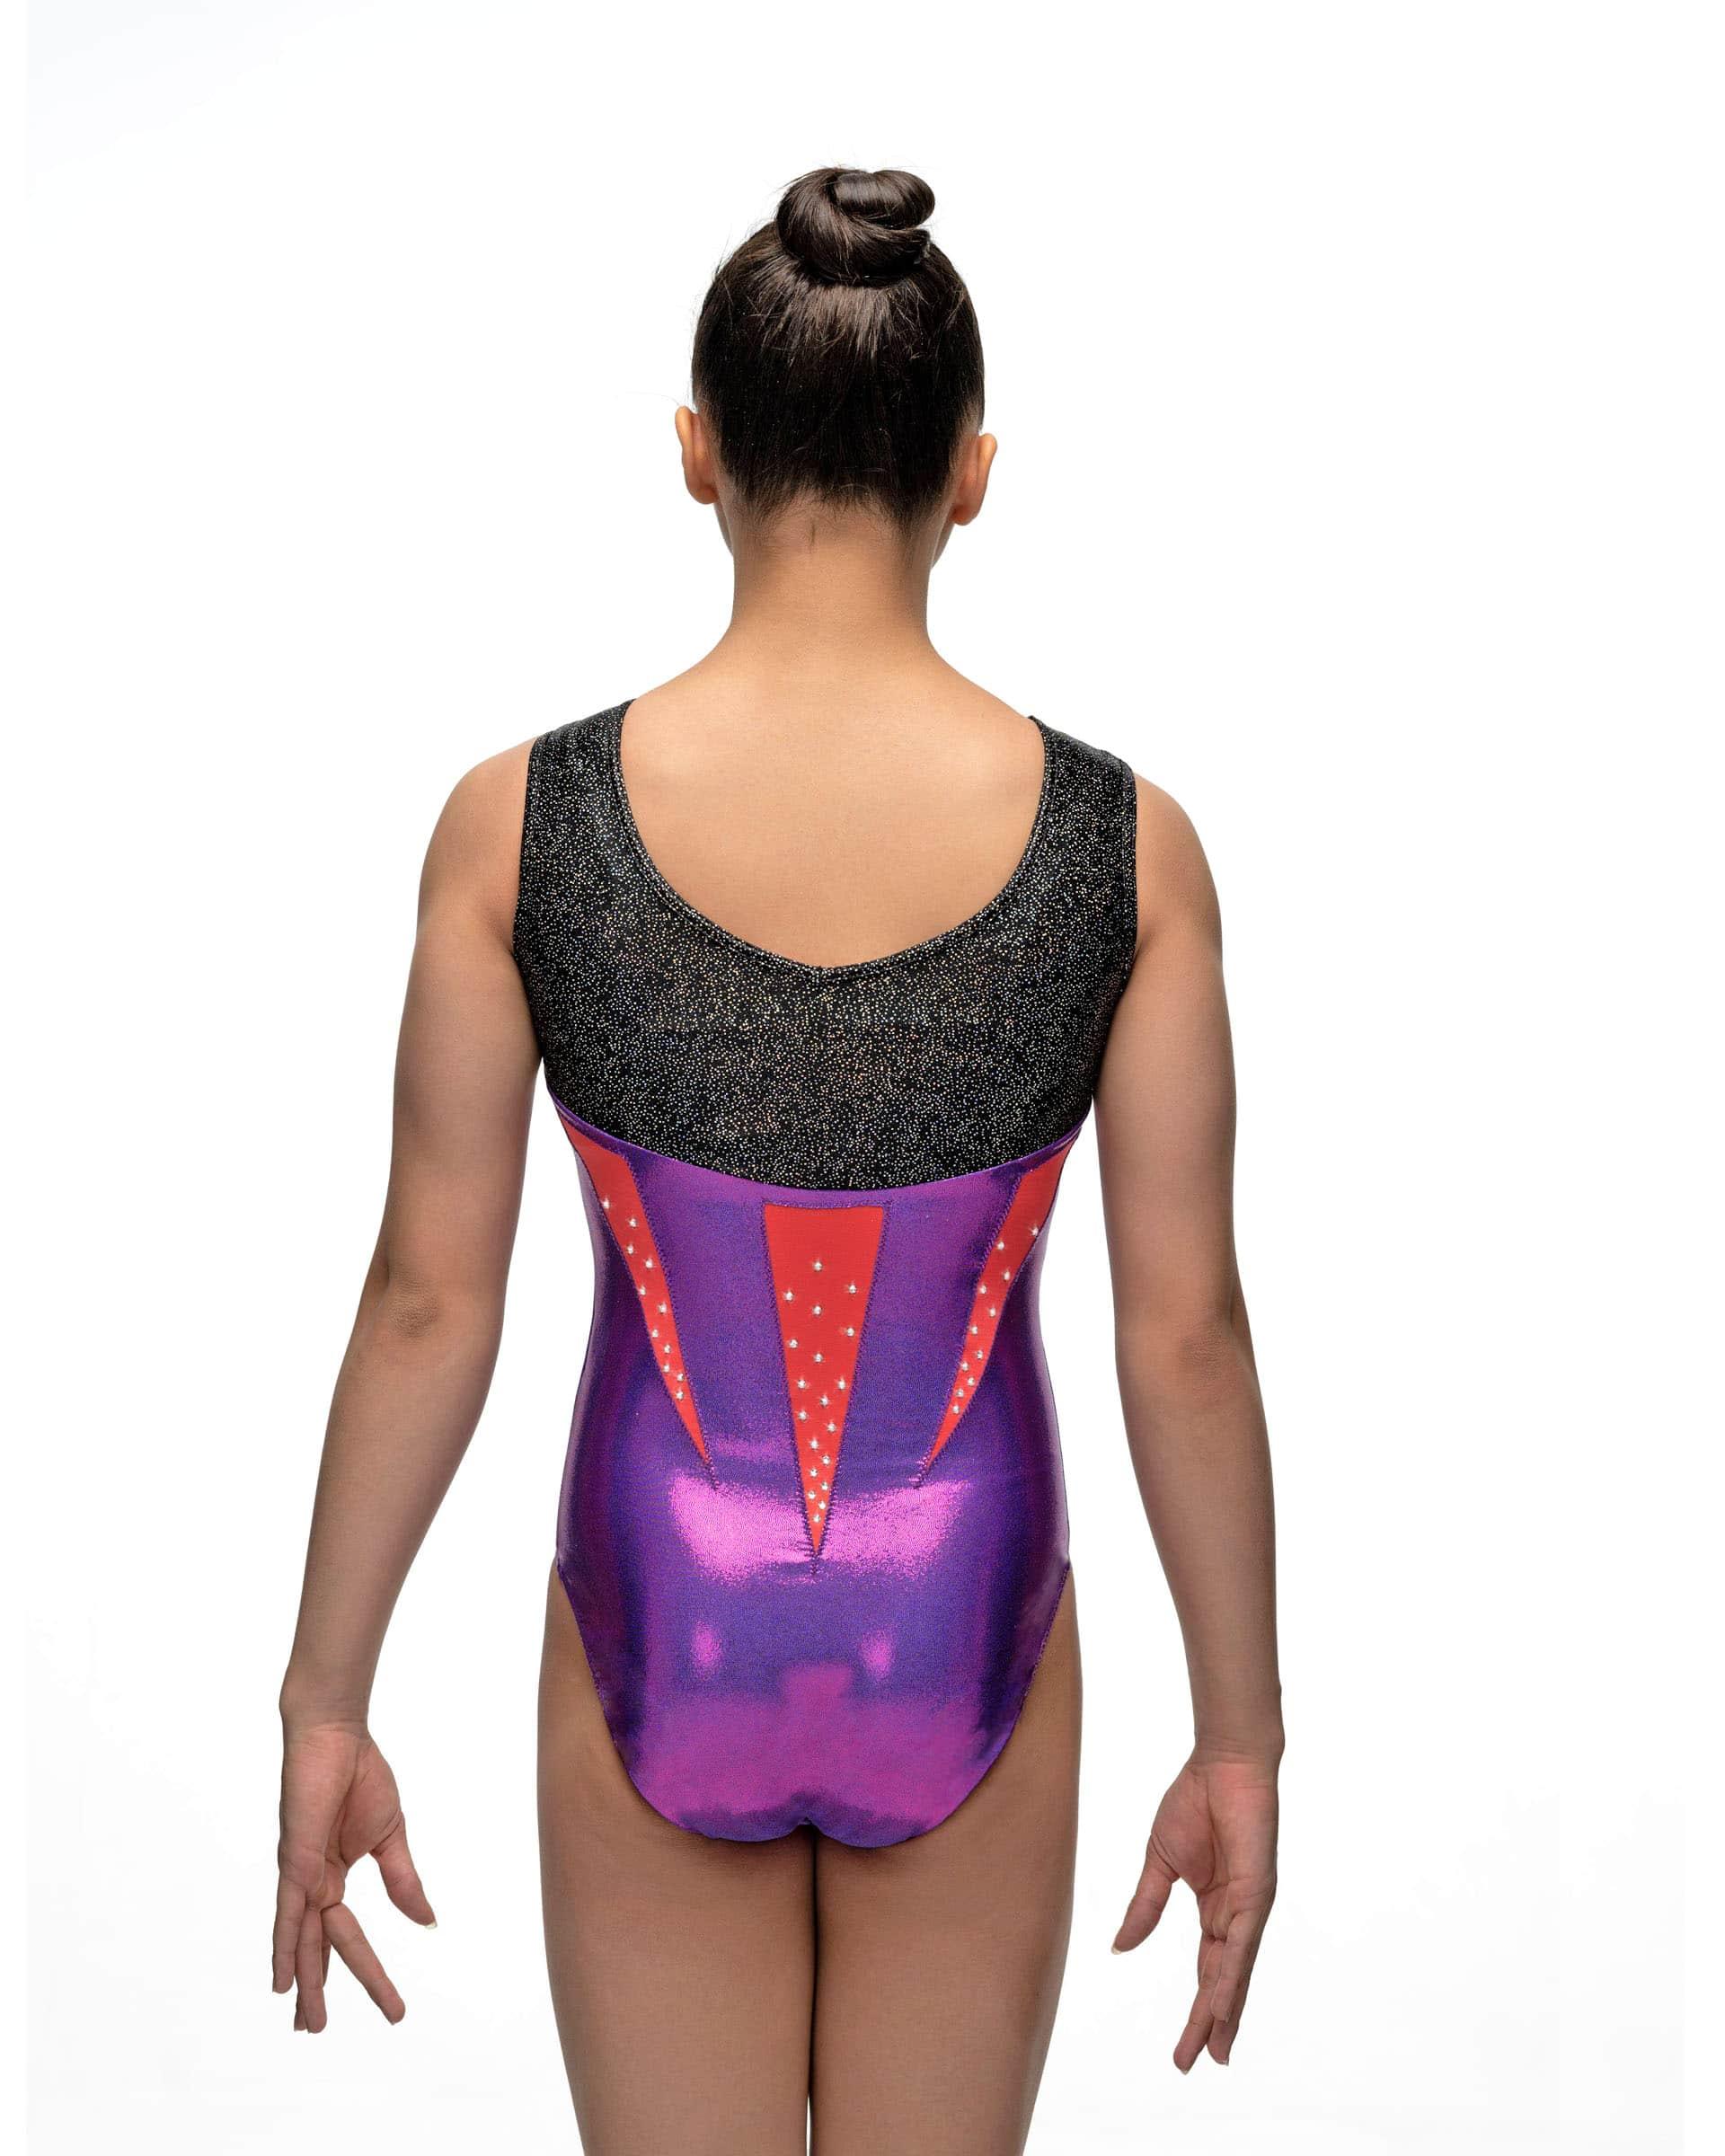 Купальник для спортивной гимнастики Christian Moreau 5638 фиолетово-черно-оранжевый со стразами без рукава